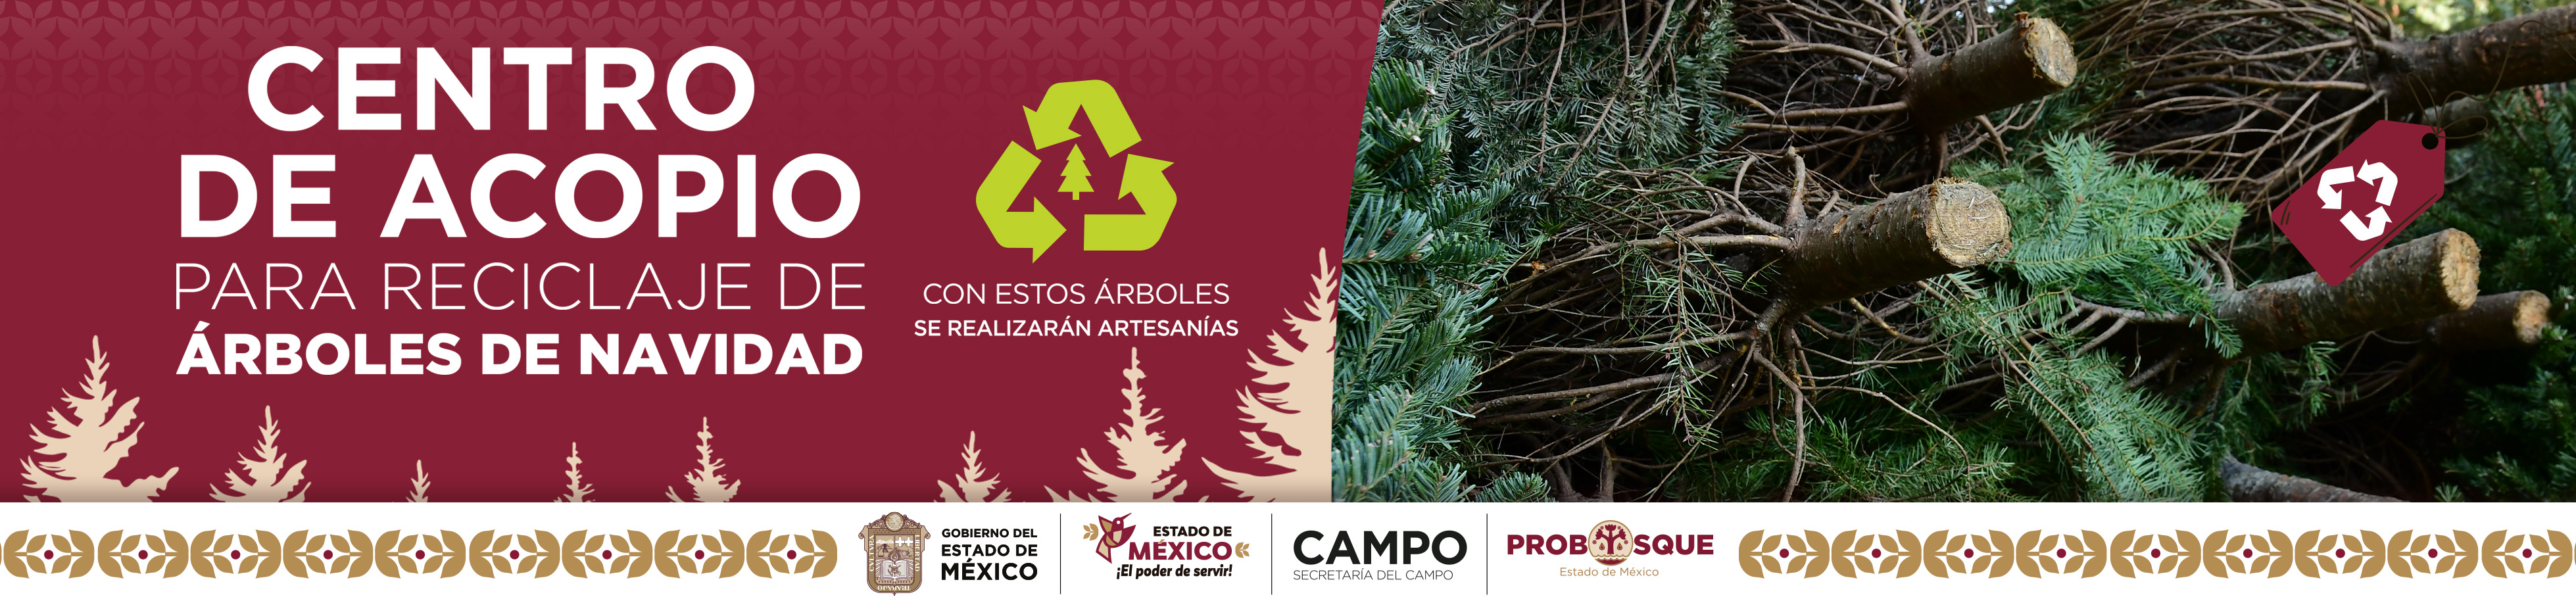 Centro de Acopio para reciclaje de Árboles de Navidad